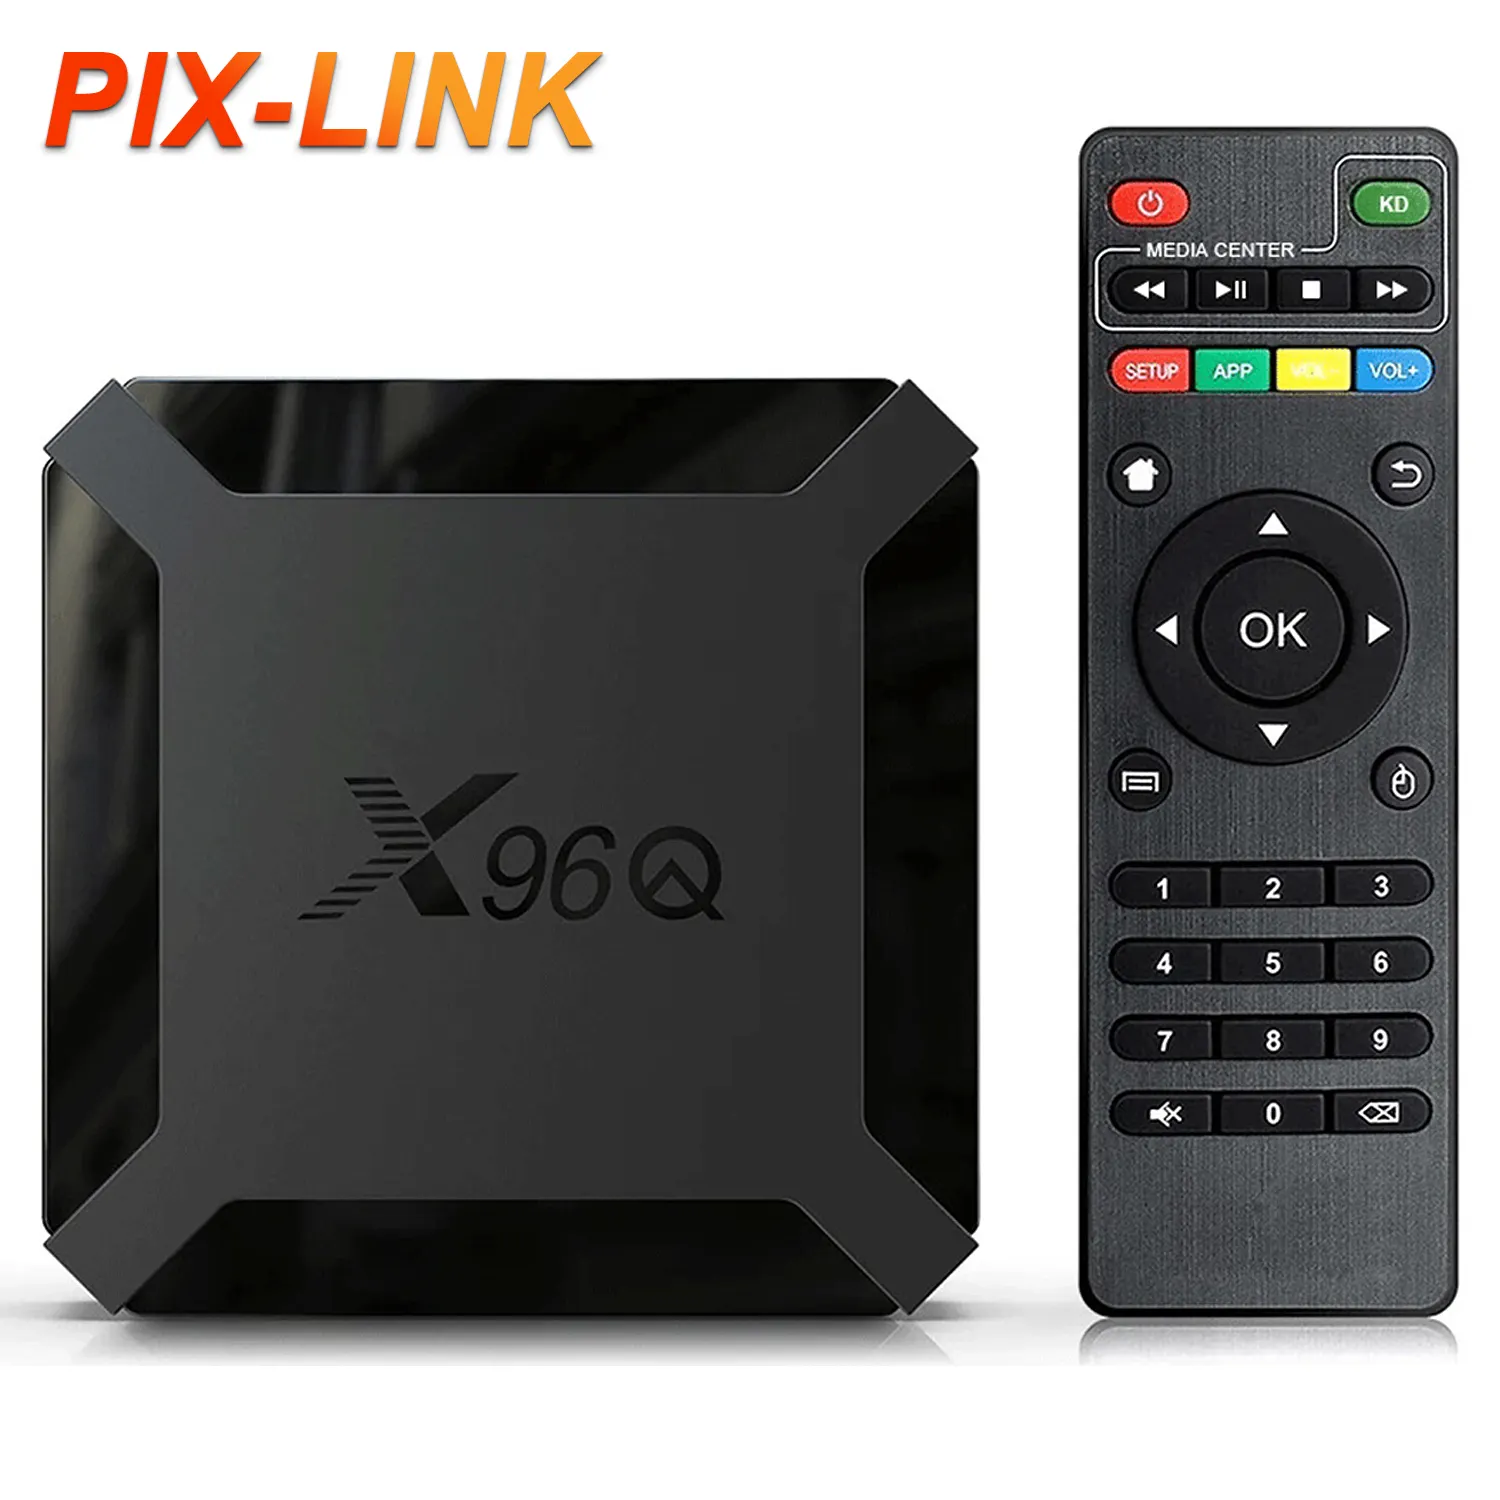 PIX-LINK Пользовательский логотип Android Free Hd 700 + арабские каналы арабский спутниковый ресивер Itv и сервисное устройство Itv Tv Box 4k четырехъядерный X96Q